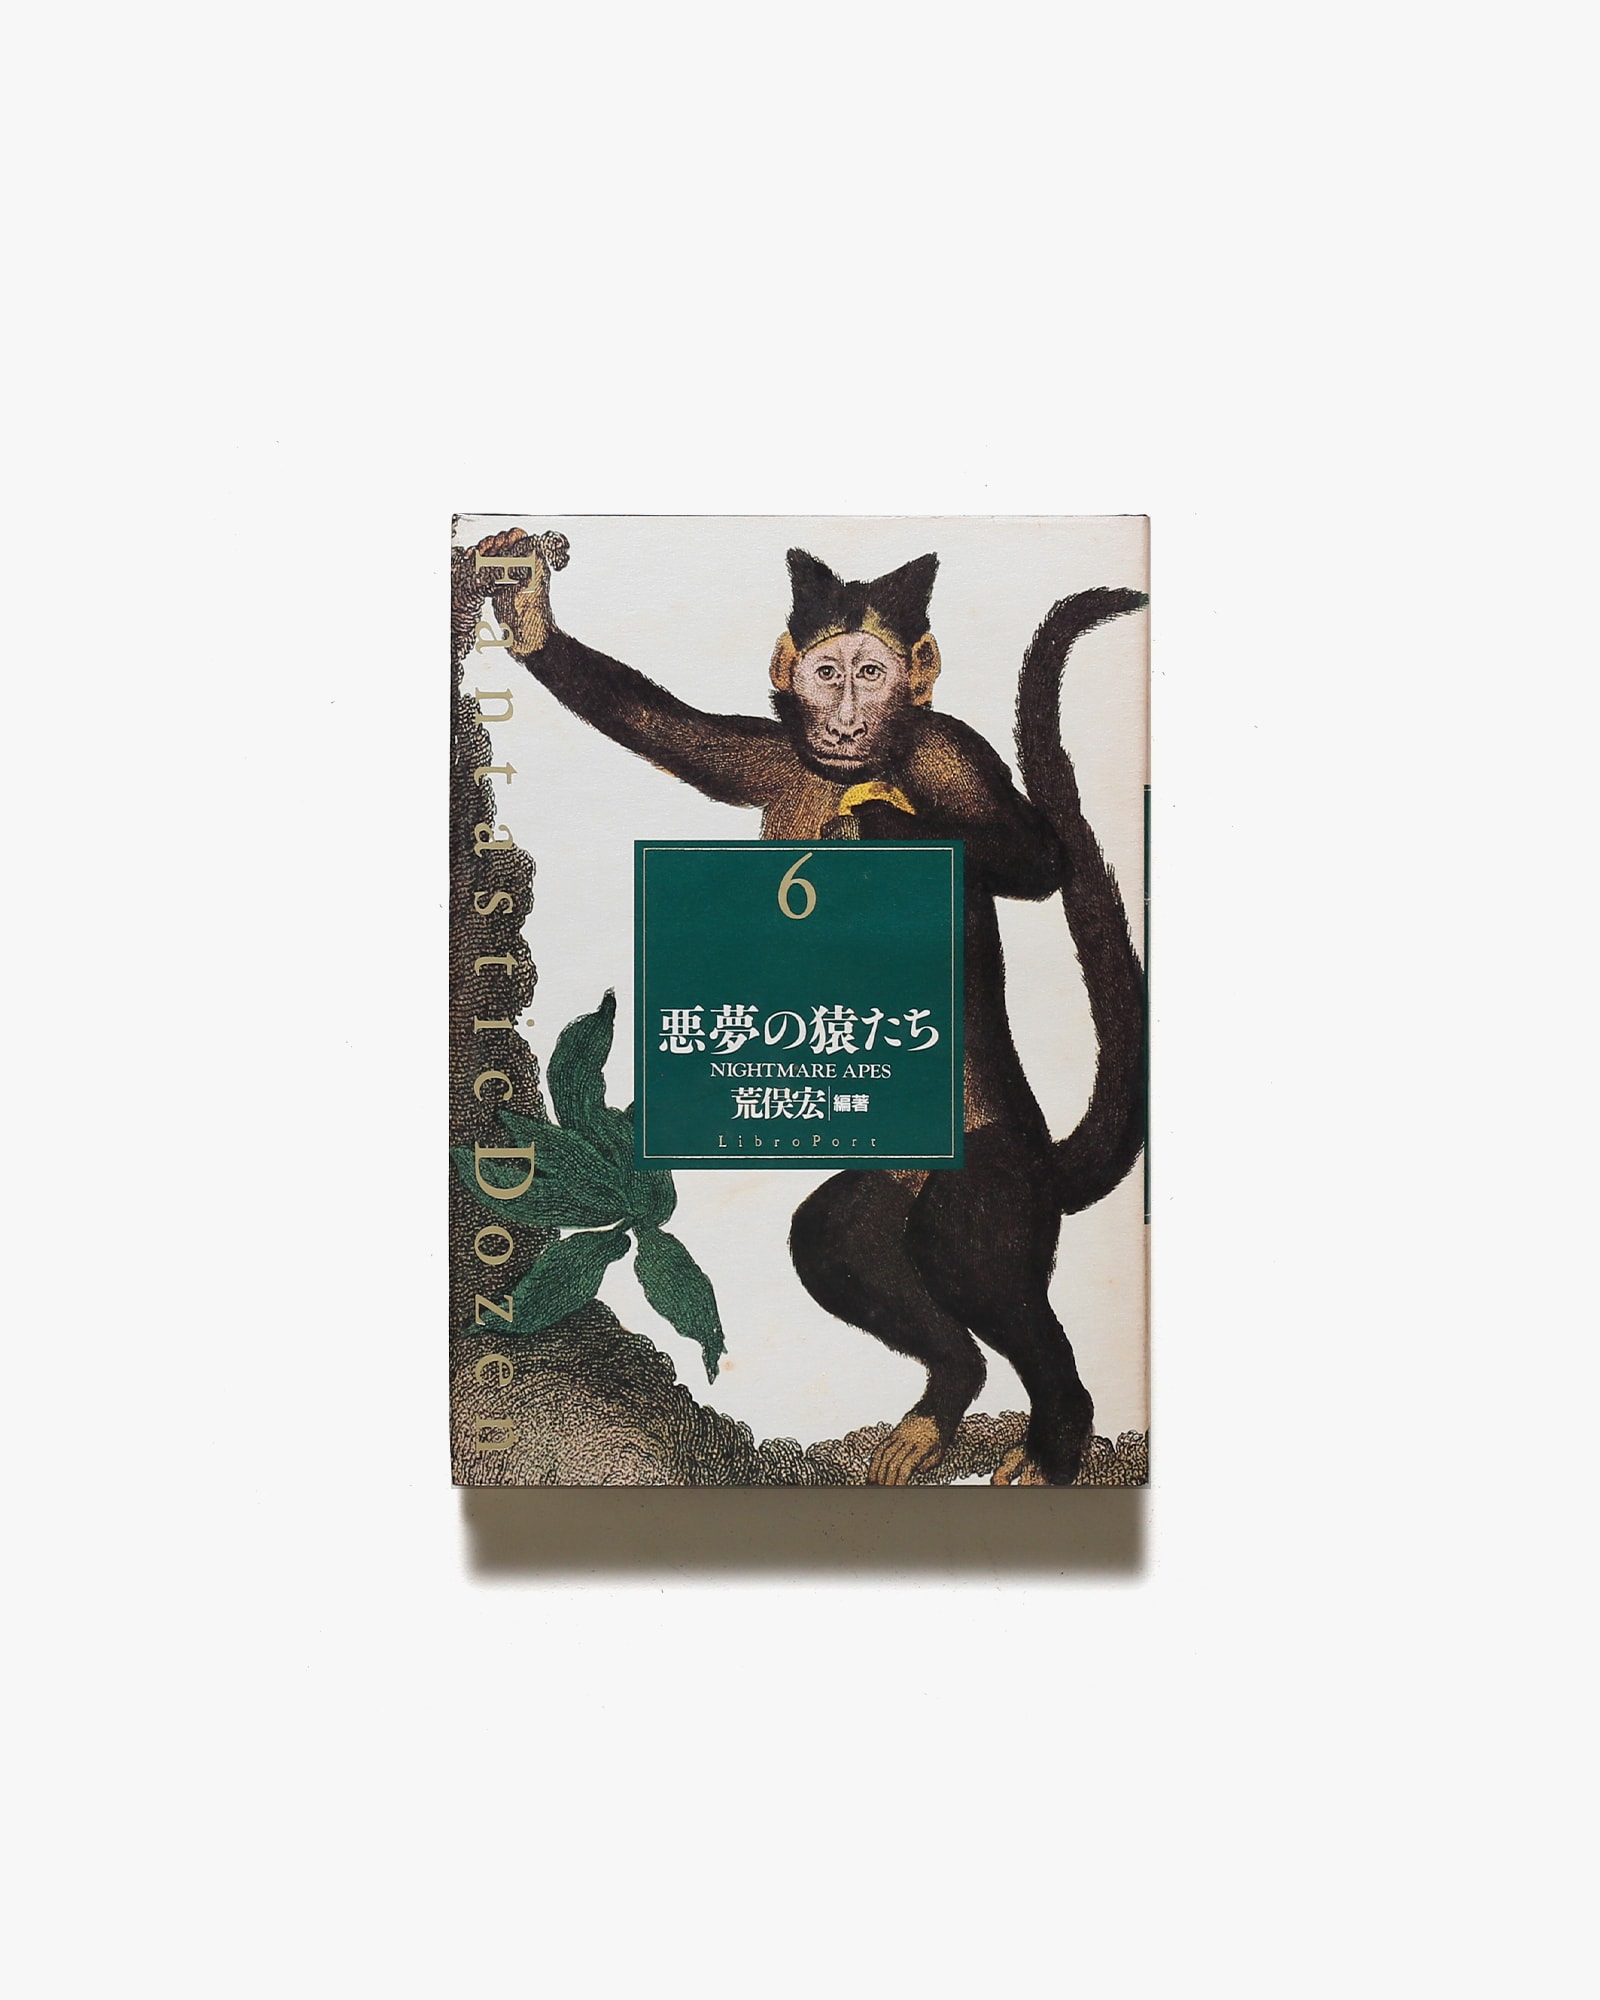 ファンタスティック12 第6巻 悪夢の猿たち